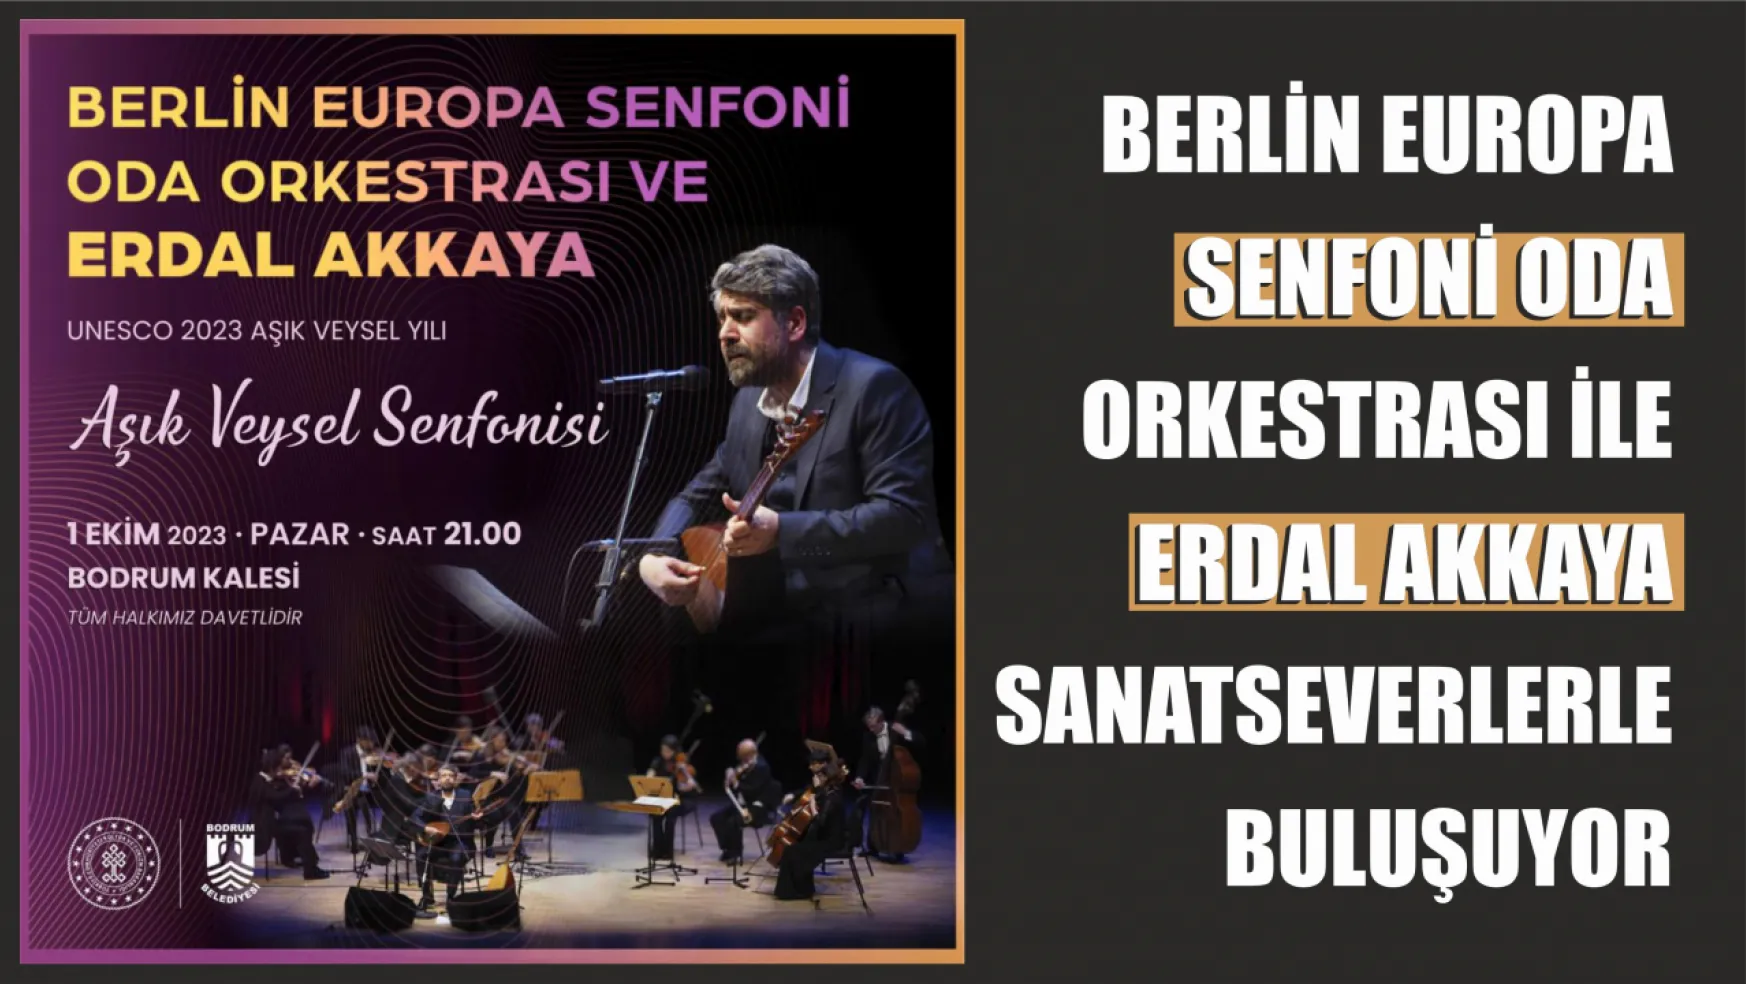 Berlin Europa Senfoni Oda Orkestrası ve Erdal Akkaya Bodrum'da